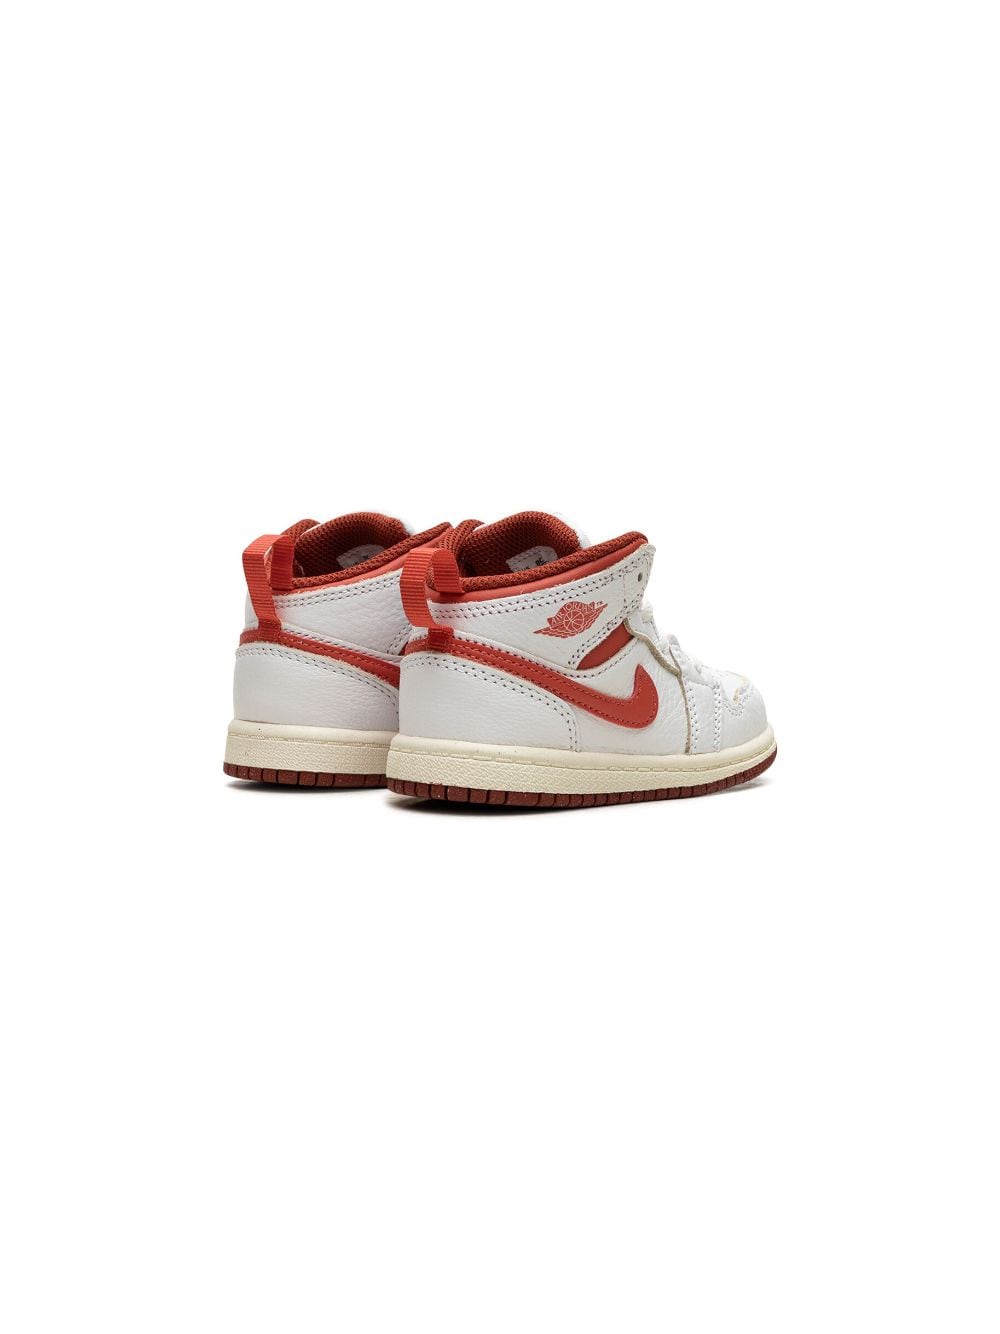 AIR JORDAN 1 MID SE WHITE/DUNE RED 运动鞋